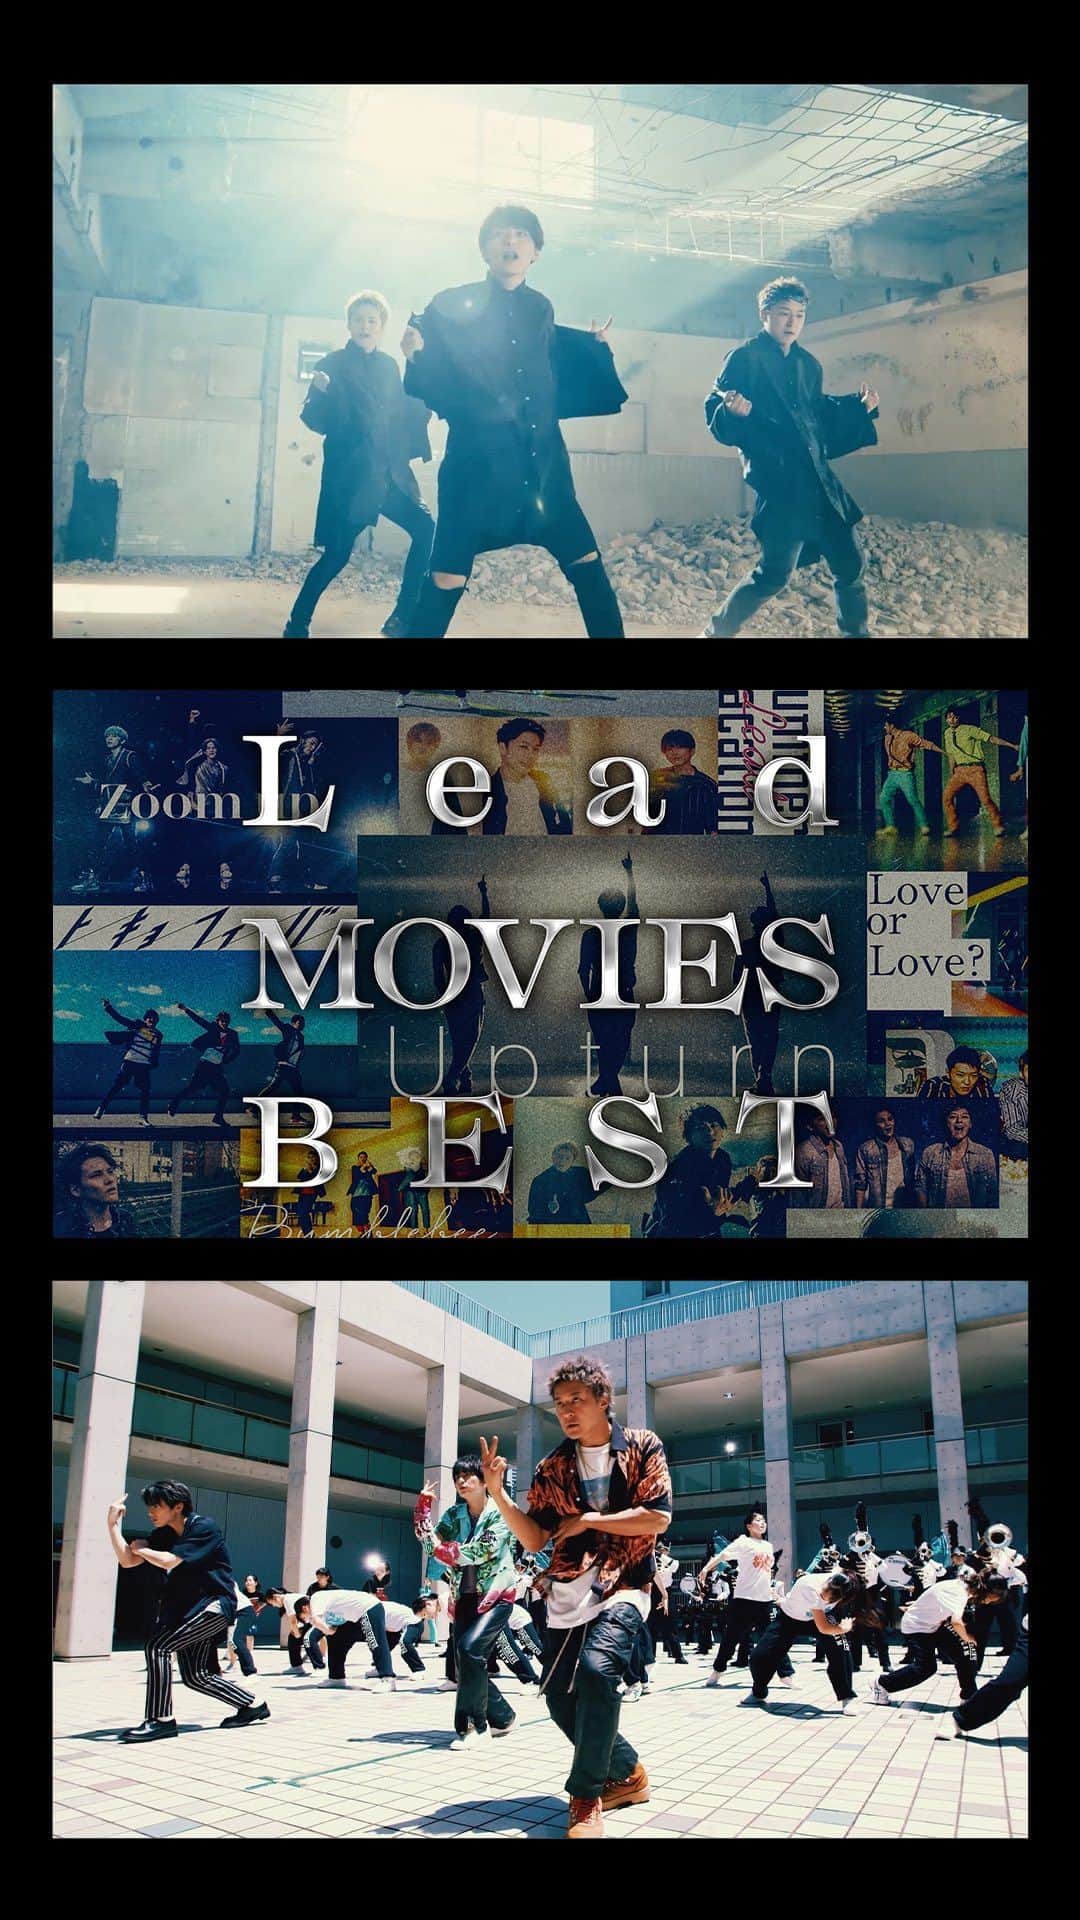 Lead【公式】のインスタグラム：「@lead_staff   2023.09.27 Release Lead初のベストMV集「MOVIES BEST」  【Trailer公開】 https://youtu.be/dUv-lWGqjjY ______________________________  2002年のデビューシングル「真夏のMagic」から最新シングル「See Your Heart」までの全Music Videoを収録。 Disc3には新規撮り下ろし映像も収録したLeadの20年の歴史と進化が詰まった豪華3枚組。 ______________________________  ◢◤収録内容(全形態共通)◢◤  【Disc1】Music Video 01. 真夏のMagic 02. "Show me the way" 03. FLY AWAY 04. ファンキーデイズ！ 05. GET WILD LIFE 06. Night Deluxe 07. 手のひらを太陽に 08. あたらしい季節へ 09. ベイビーランニンワイルド 10. バージンブルー 11. Summer Madness 12. Drive Alive 13. 海 14. STAND UP! 15. Sunnyday 16. ギラギラRomantic 17. SPEED STAR★ 18. Wanna Be With You 19. Stand and Fight 20. Still  【Disc2】Music video 01. Upturn 02. GREEN DAYS 03. strings 04. サクラ 05. 想い出ブレイカー 06. My One 07. 約束 08. Zoom up 09. トーキョーフィーバー 10. Beautiful Day 11. Bumblebee 12. Love or Love? 13. Be the NAKED 14. Summer Vacation 15. H I D E and S E E K 16. サンセット・リフレイン 17. Tuxedo～タキシード～ 18. Sonic Boom 19. 導標 20. See Your Heart  【Disc3】新規撮り下ろし映像 ※収録内容は後日公開いたします。  ◆スペシャルボックス盤◆ ＊3Blu-ray+96Pブックレット ＊オリジナルボイス入りUSBメモリ申込券封入 価格：¥11,000(税込) ※本商品は、ポニーキャニオン特設サイト予約限定販売商品です。  予約受付期間：2023年7月7日(金)18:00〜2023年8月5日(土)23:59 ※ご予約いただいた方のみの完全受注限定商品となります。 ※予約締切日以降の販売予定はございませんのでご注意下さい。 ※スペシャルボックス盤はポニーキャニオンショッピングクラブ、PONYCANYON SHOP、魔法集市限定販売となります。全国CDショップ等での販売はございません。  ◆通常盤◆ [Blu-ray] ＊3Blu-ray+48Pブックレット 価格：¥5,500(税込) [DVD] ＊3DVD+48Pブックレット 価格：¥4,400(税込)  ※価格、収録内容共に予告なく変更する事が御座います。  【早期予約購入特典】 ■Amazon.co.jp L判ブロマイド3枚セット（ソロ3枚組） Amazon.co.jpでLead「MOVIES BEST」をご予約・ご購入いただいた方へ、早期予約購入特典として「L判ブロマイド3枚セット（ソロ3枚組）」をプレゼントいたします。 ※特典は先着の付与となりますので、なくなり次第終了となります。予めご了承ください。  #Lead」